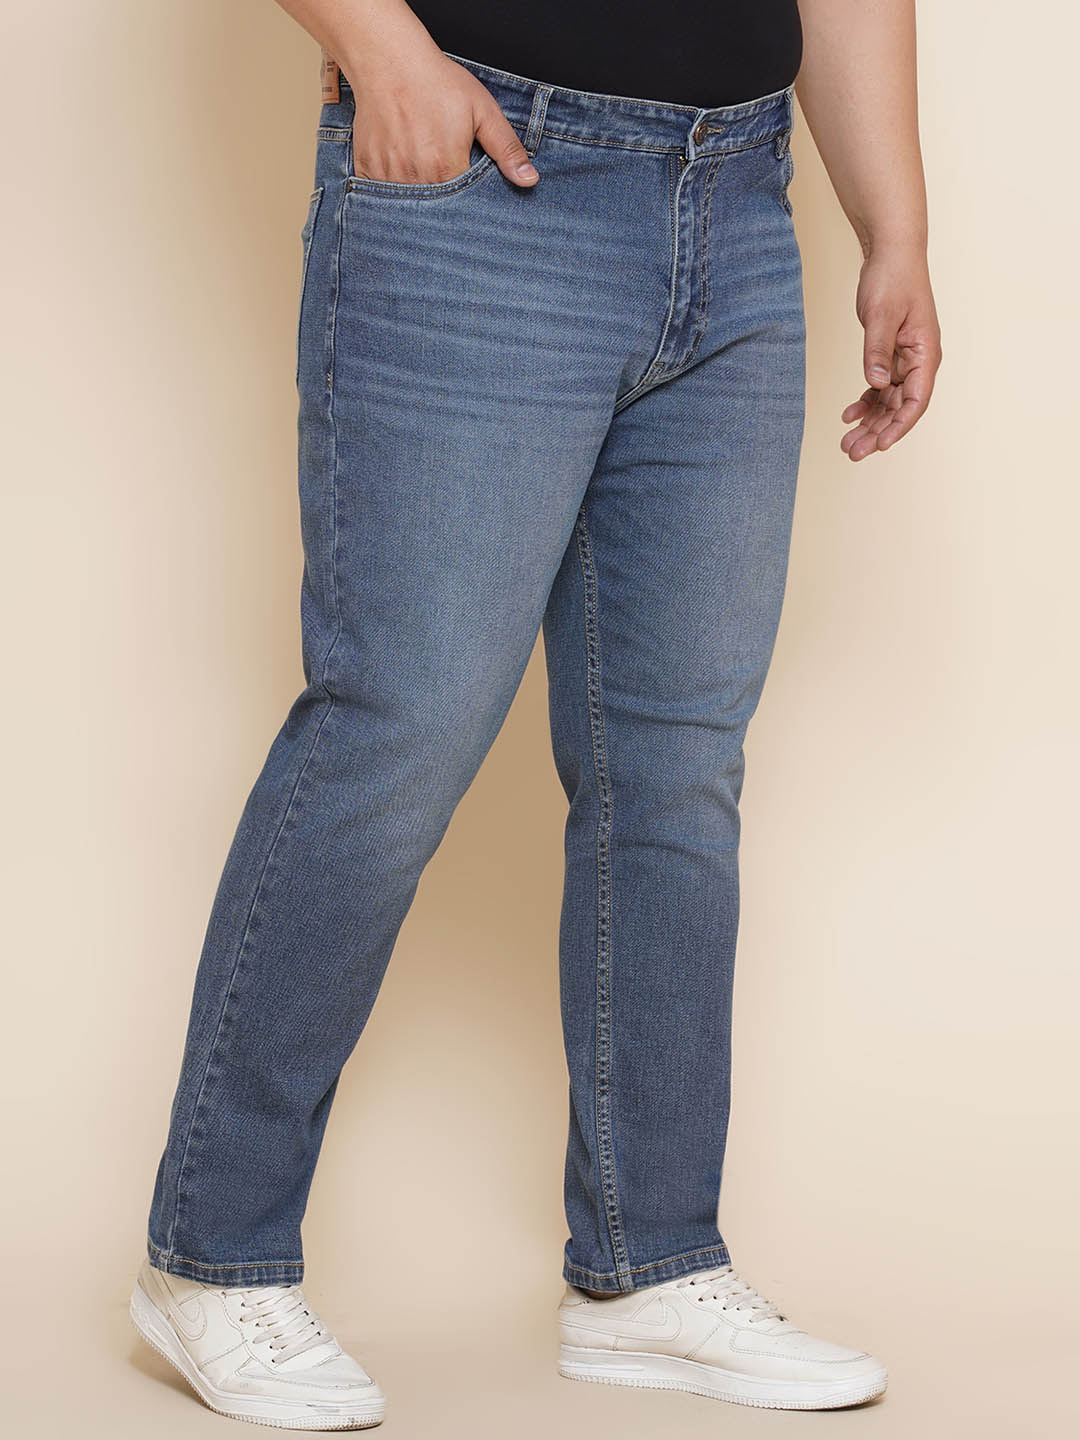 bottomwear/jeans/JPJ270125/jpj270125-3.jpg